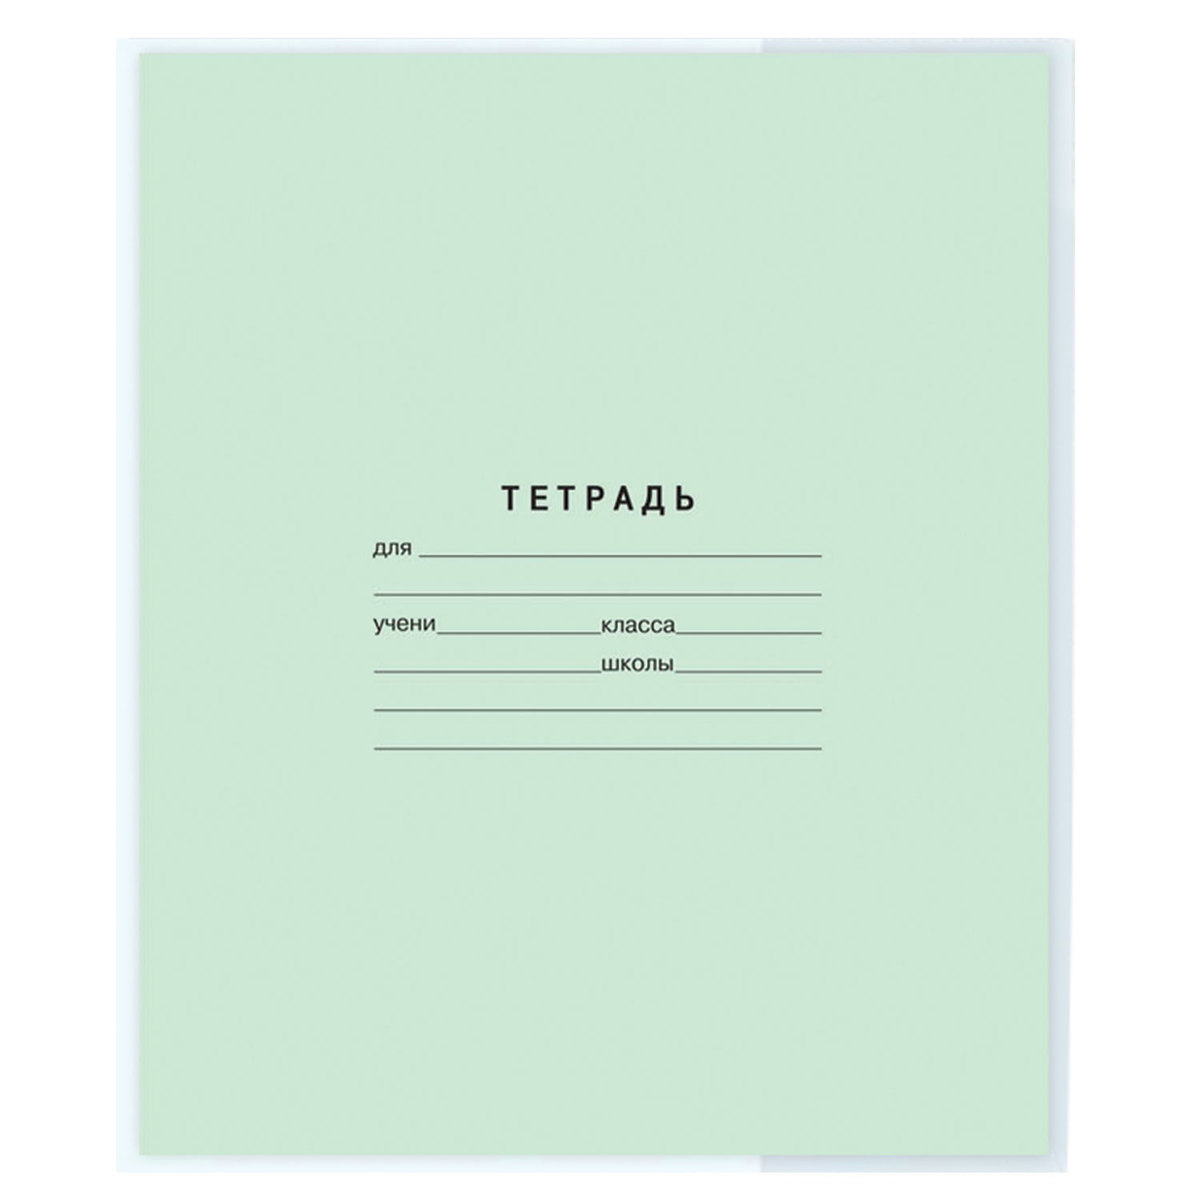 Обложки Пифагор для тетрадей и дневника 20 шт. прозрачные - фото 9